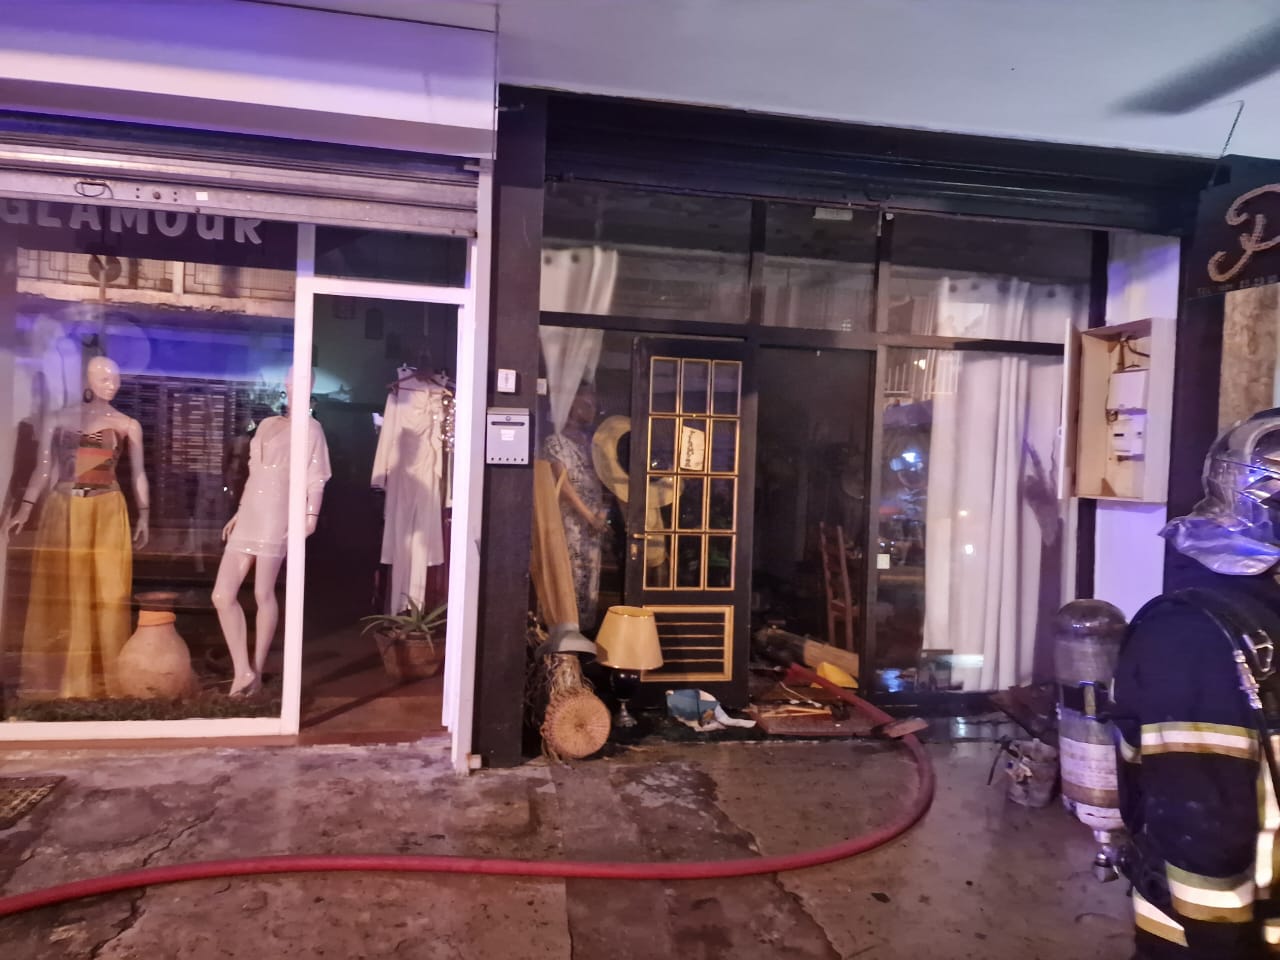     Un magasin de vêtements prend feu à Pointe-à-Pitre

